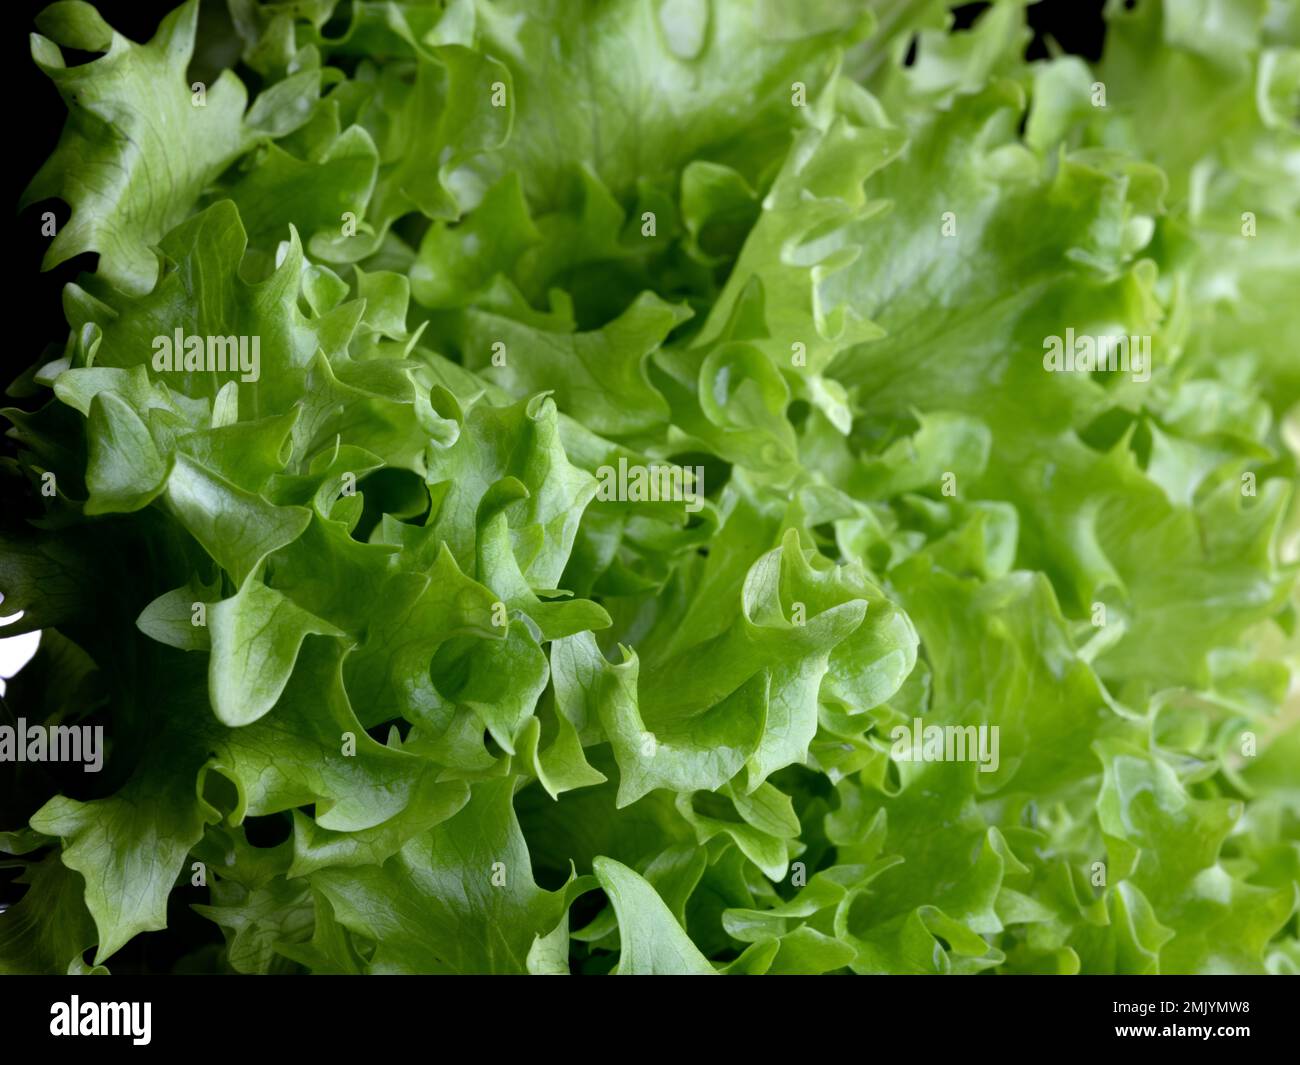 Studio shot of Fresh green Lettuce Salad leaves Stock Photo